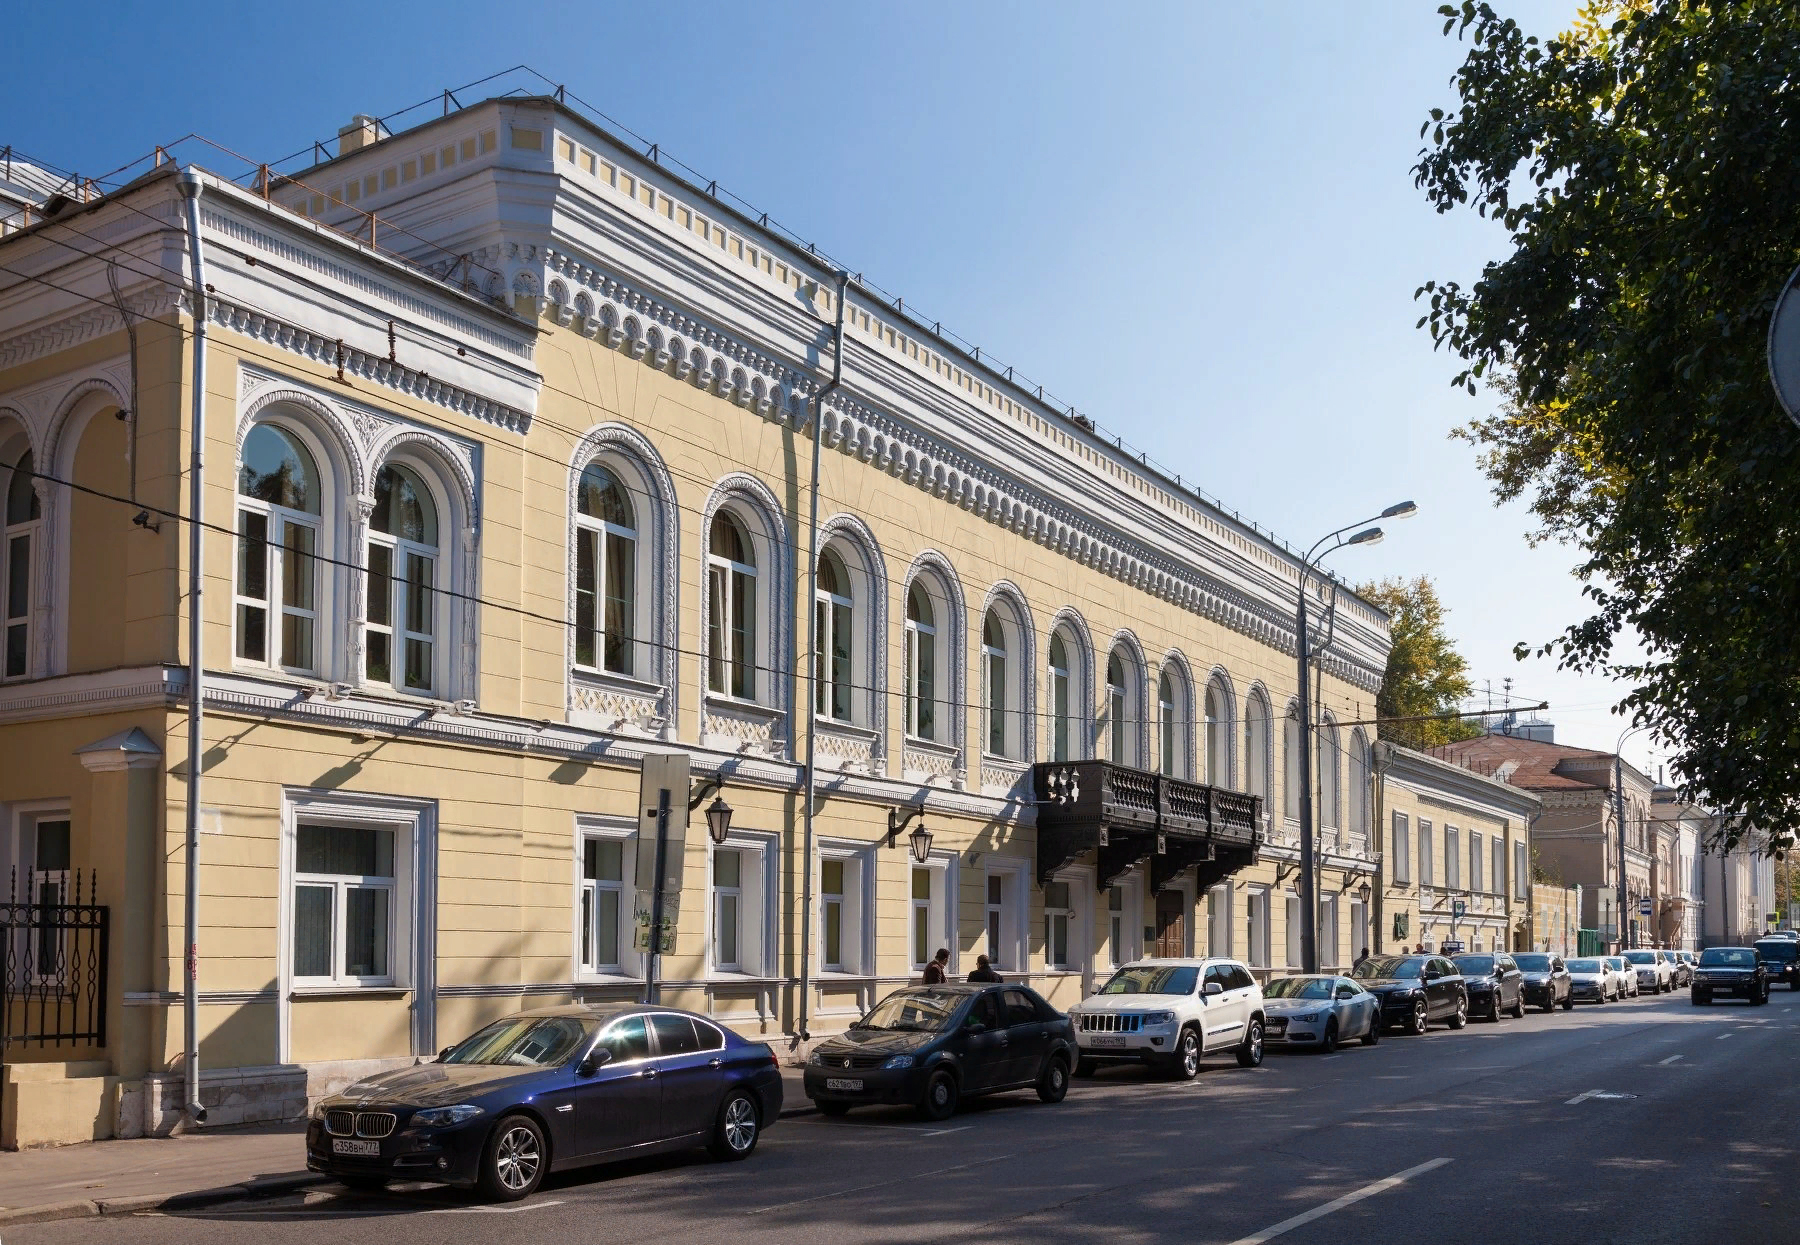 Первый в мире Музей шахмат с 2014 года основался в новых залах в Центральном доме шахматиста имени М.Ботвинника, расположенном на Гоголевском бульваре, д. 14 